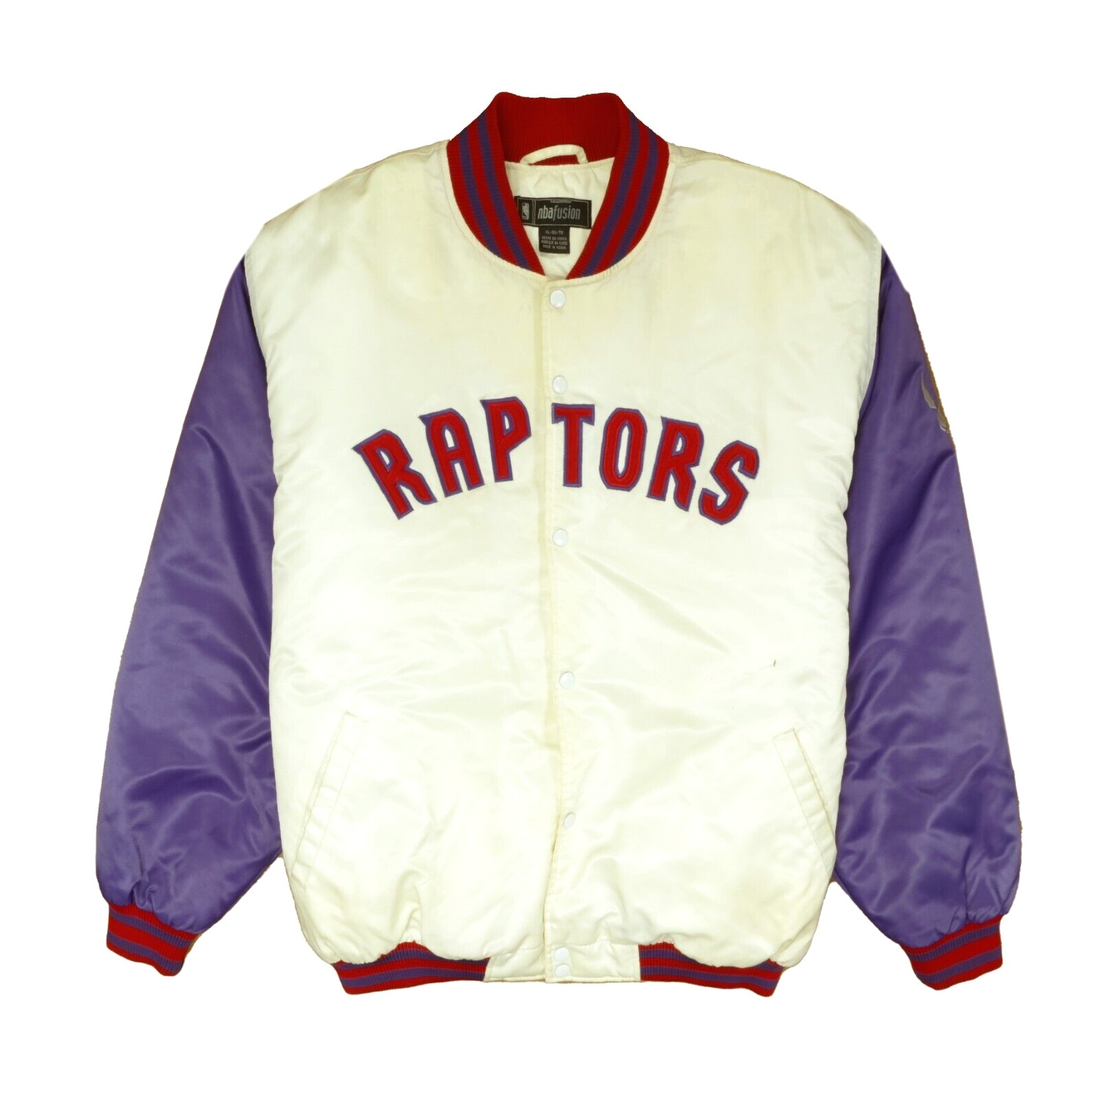 NBA Toronto Raptors Varsity Jacket